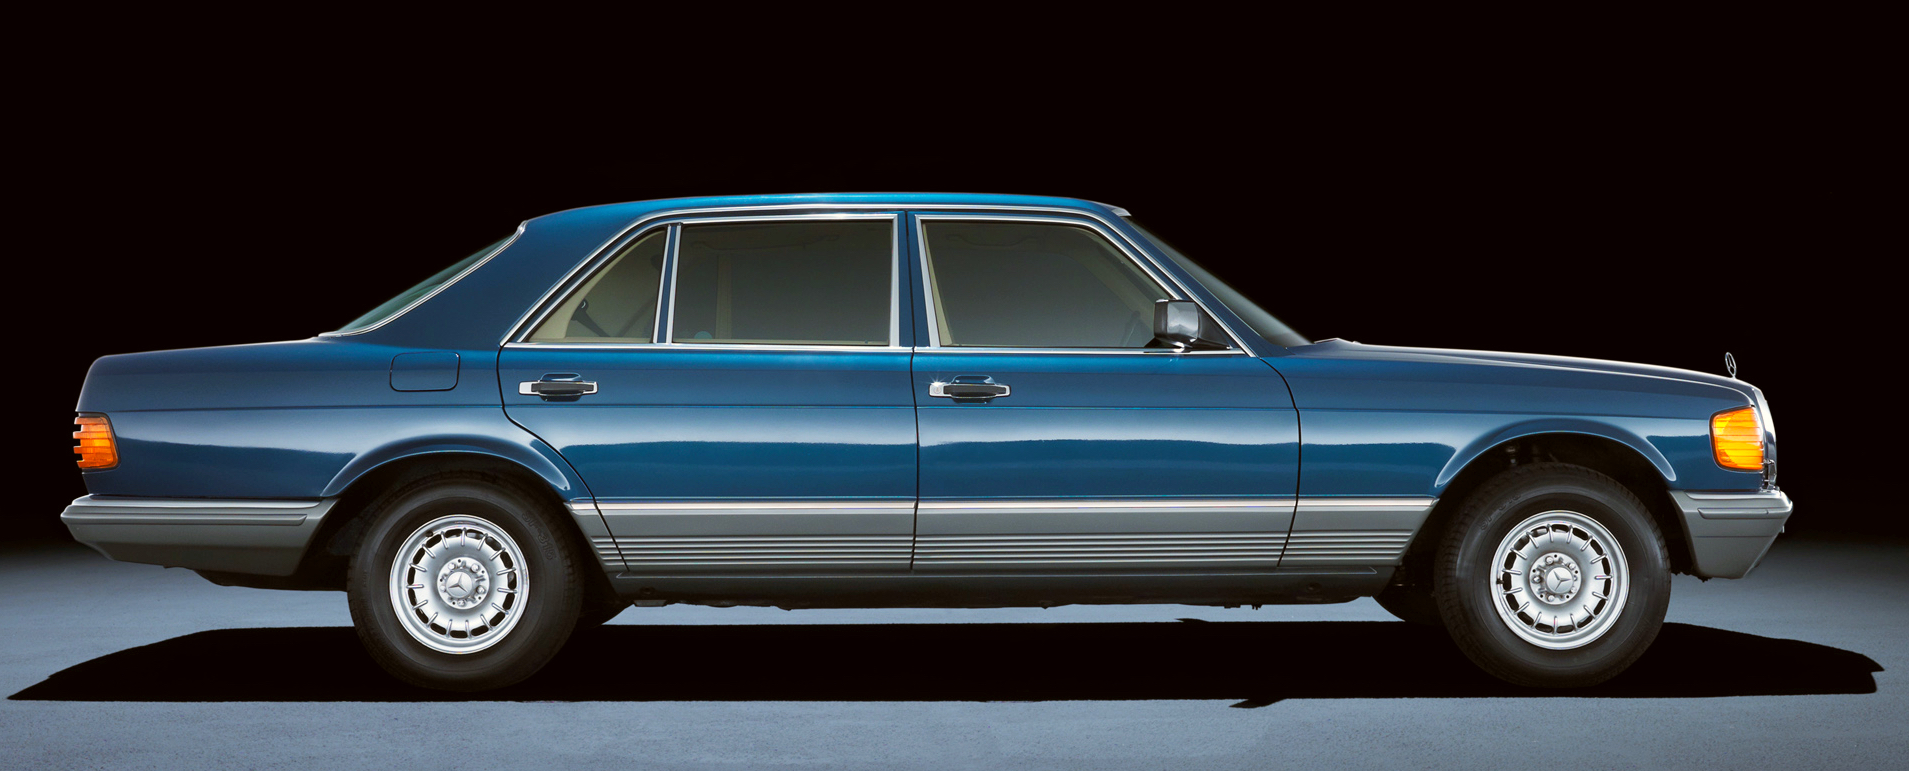 Mercedes-Benz Retro 1980-85 500 Sel Blue Wallpapers